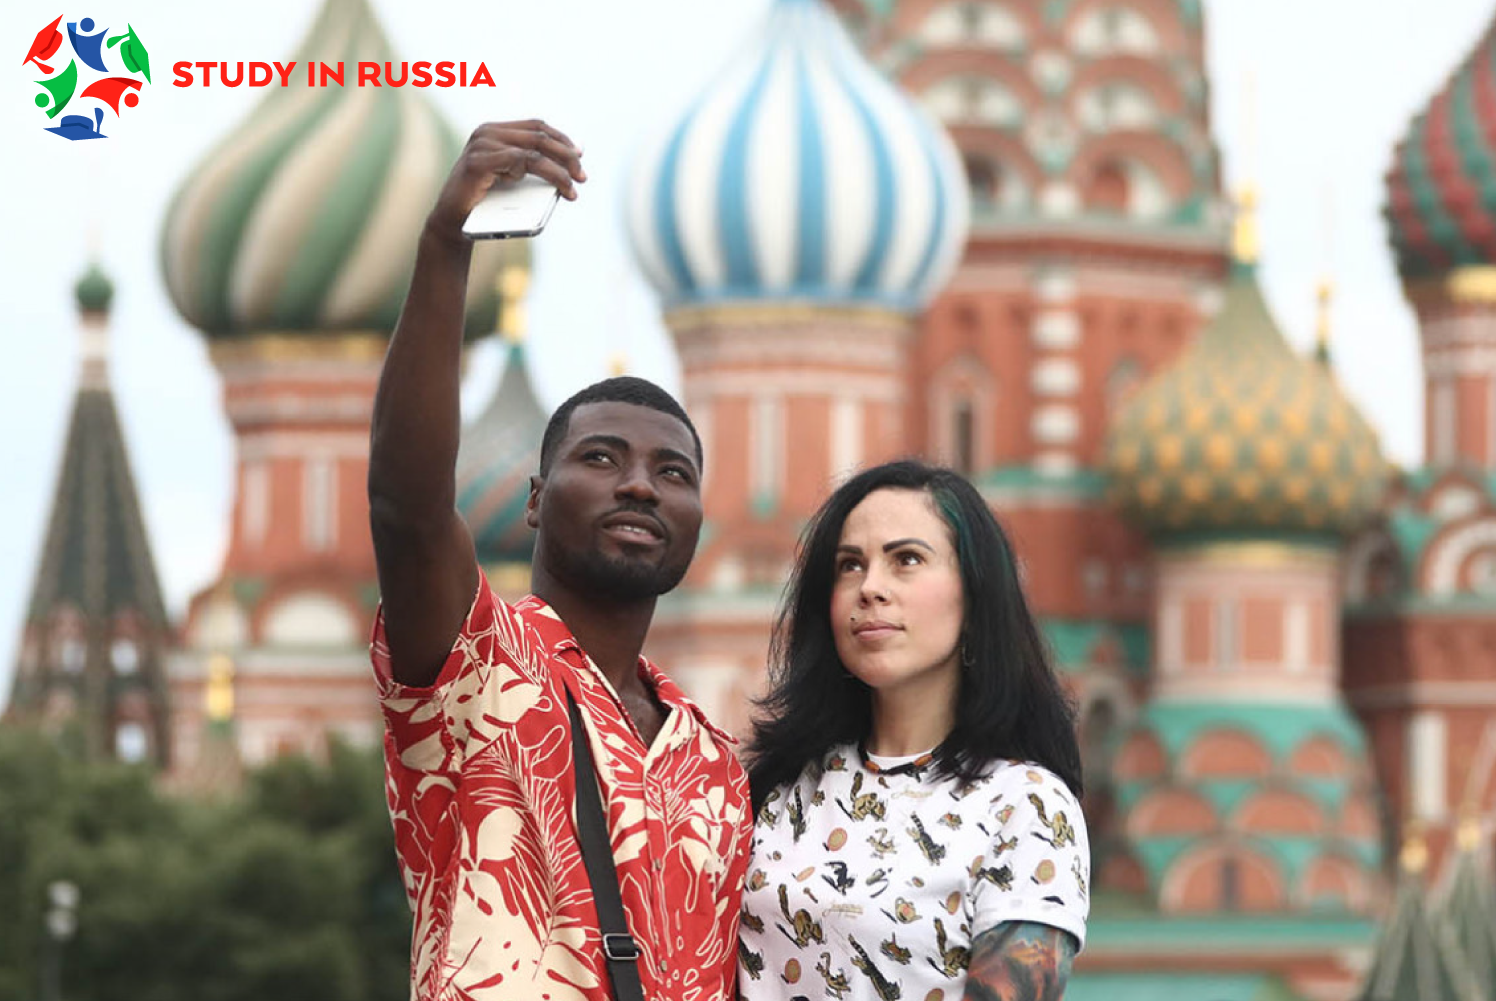 Предметы одежды россиян, веселящие иностранцев